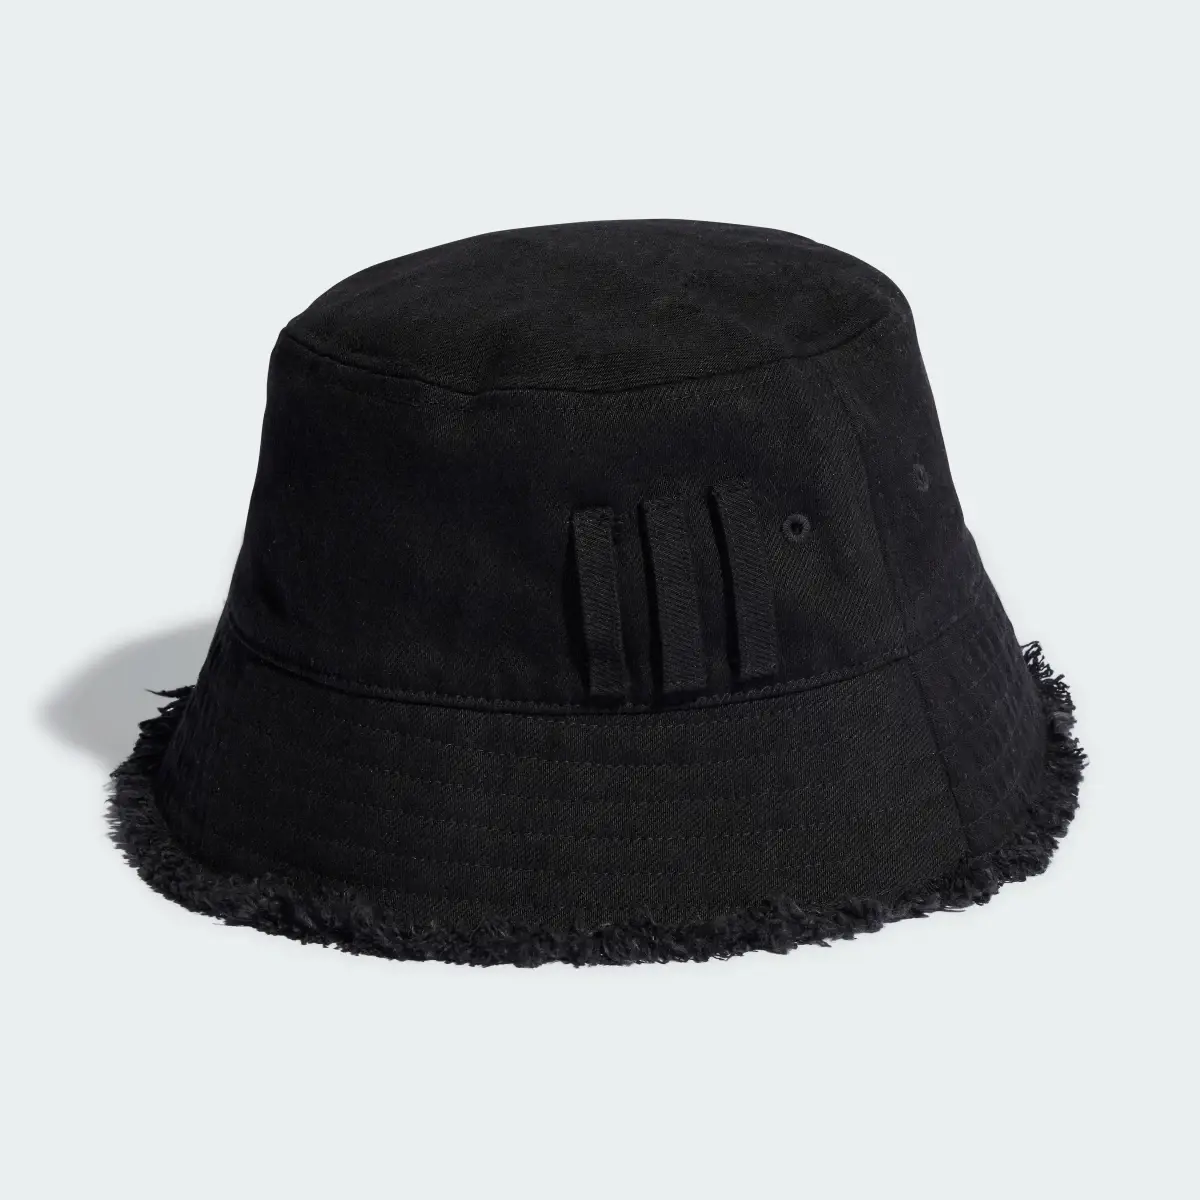 Adidas Originals x KSENIASCHNAIDER Bucket Hat. 3